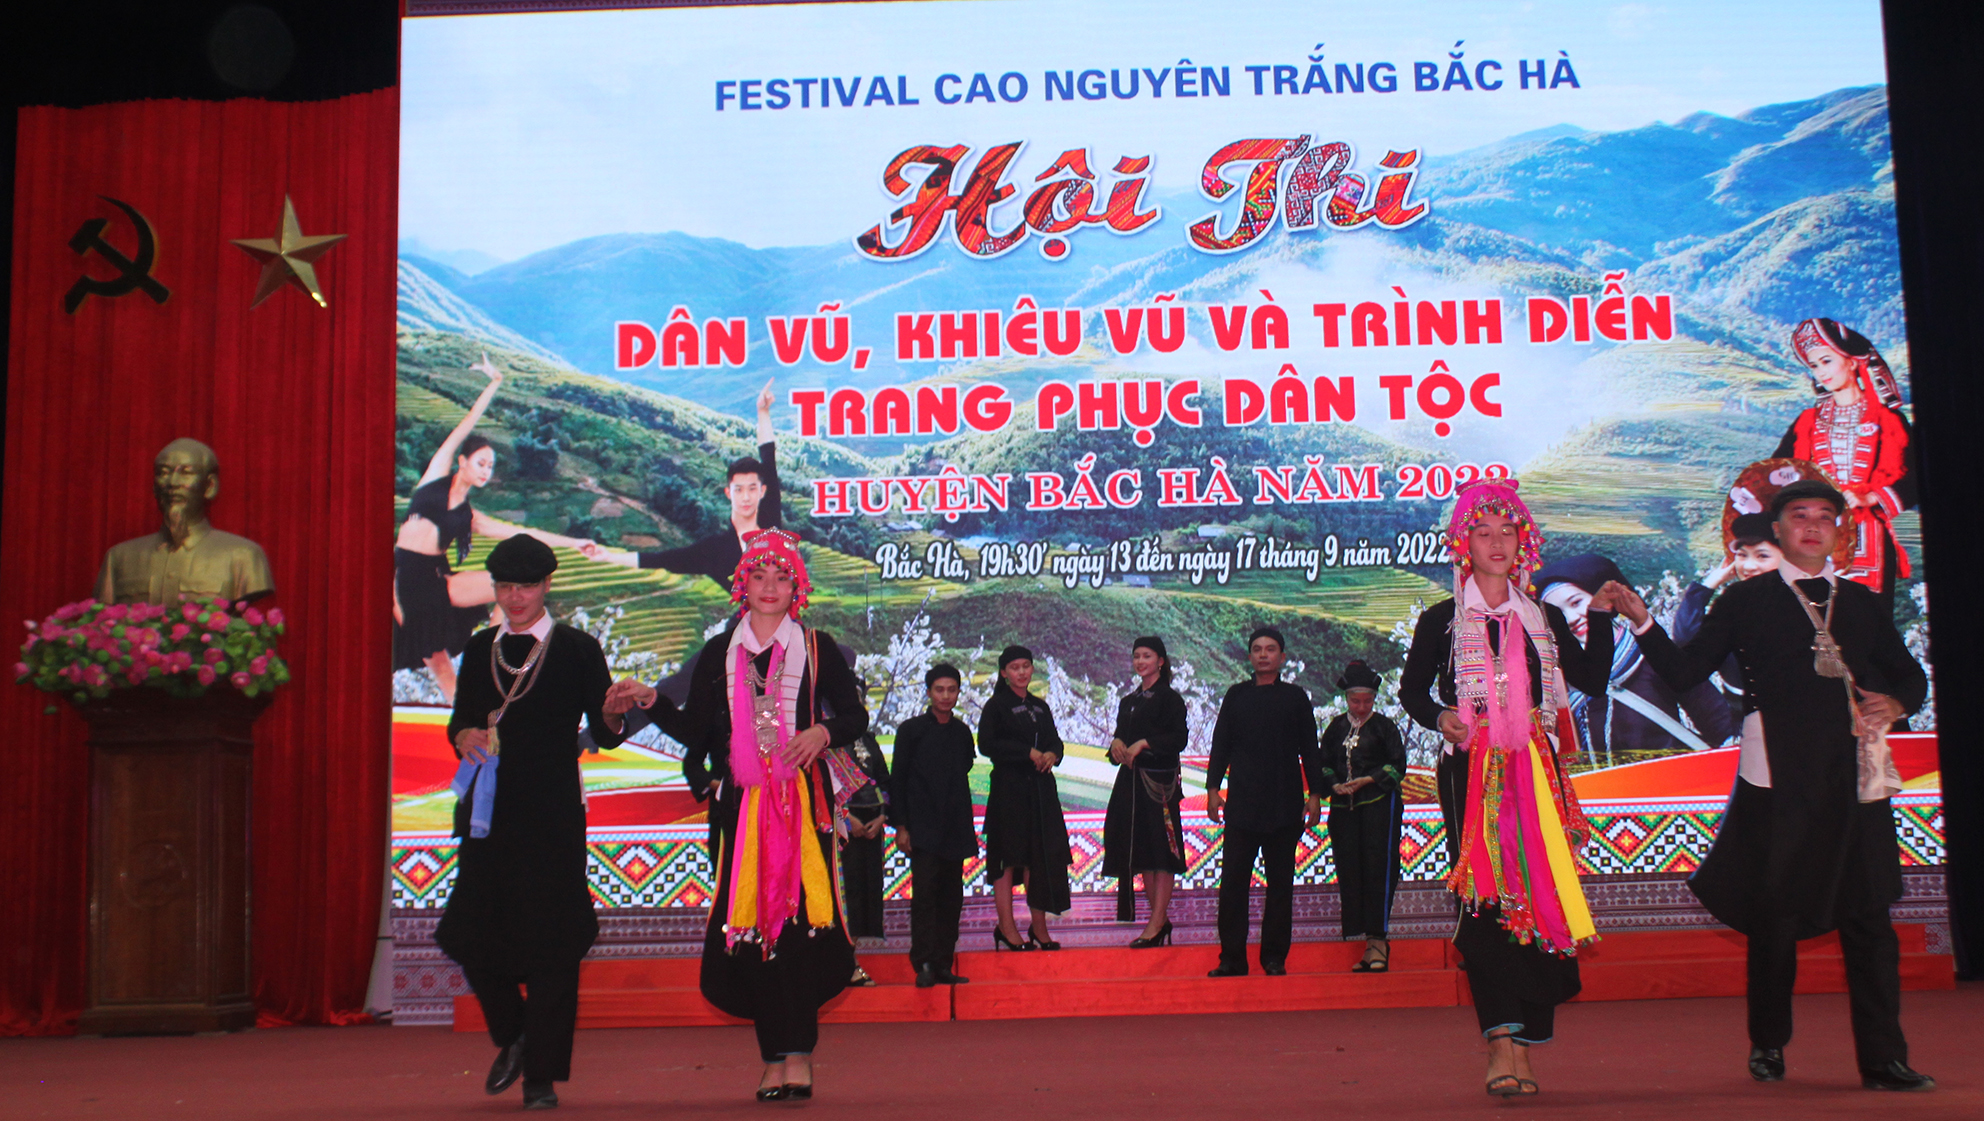 500 người tham gia thi dân vũ, khiêu vũ và trình diễn trang phục dân tộc miền cao nguyên trắng Bắc Hà - Ảnh 3.